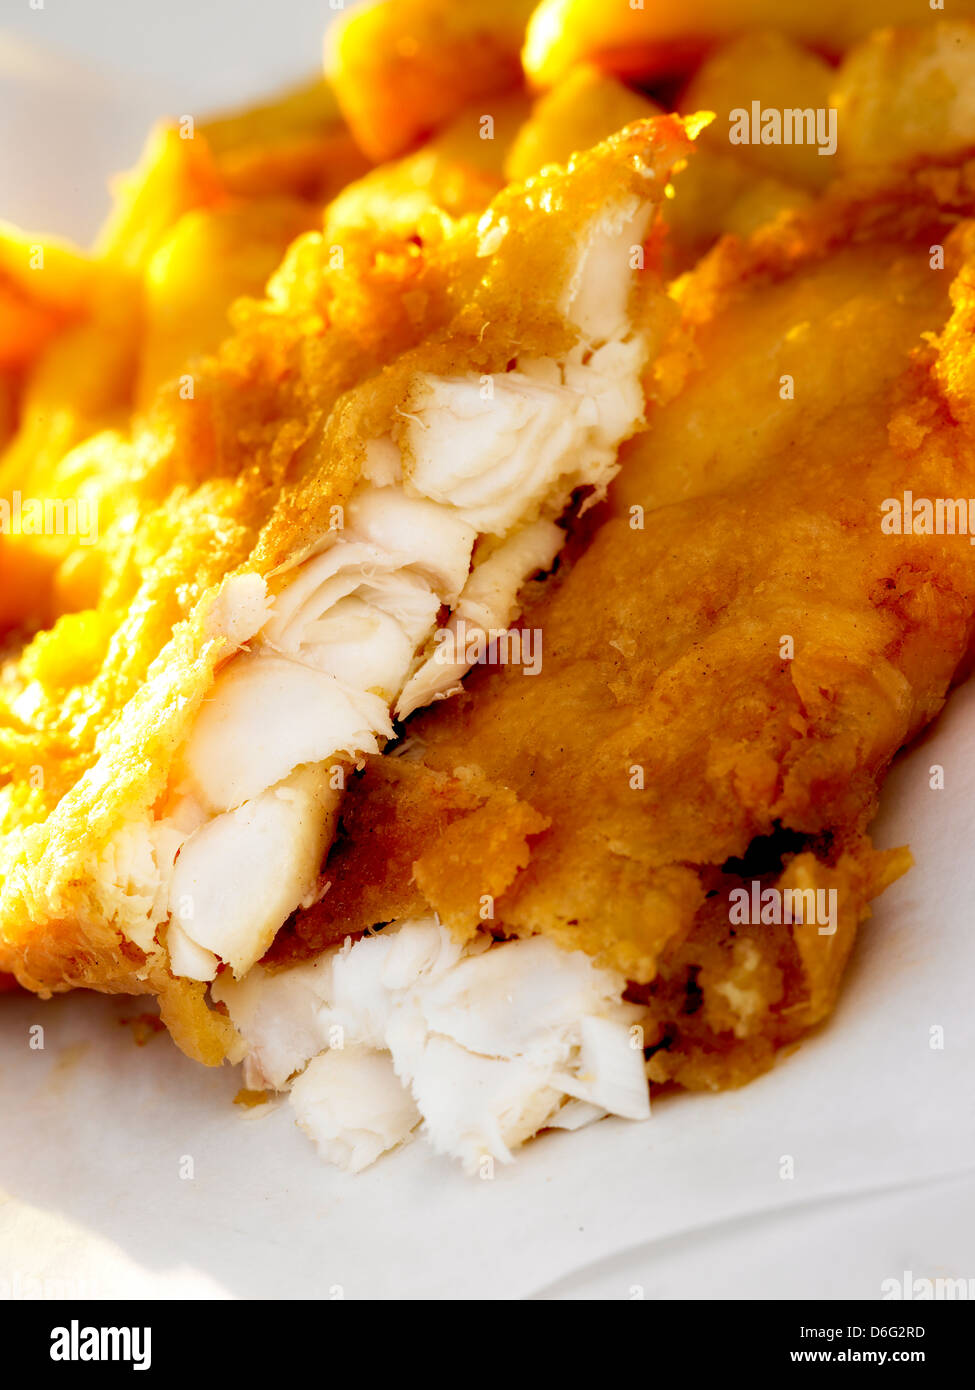 Fish and chips / Cod dans la pâte Banque D'Images